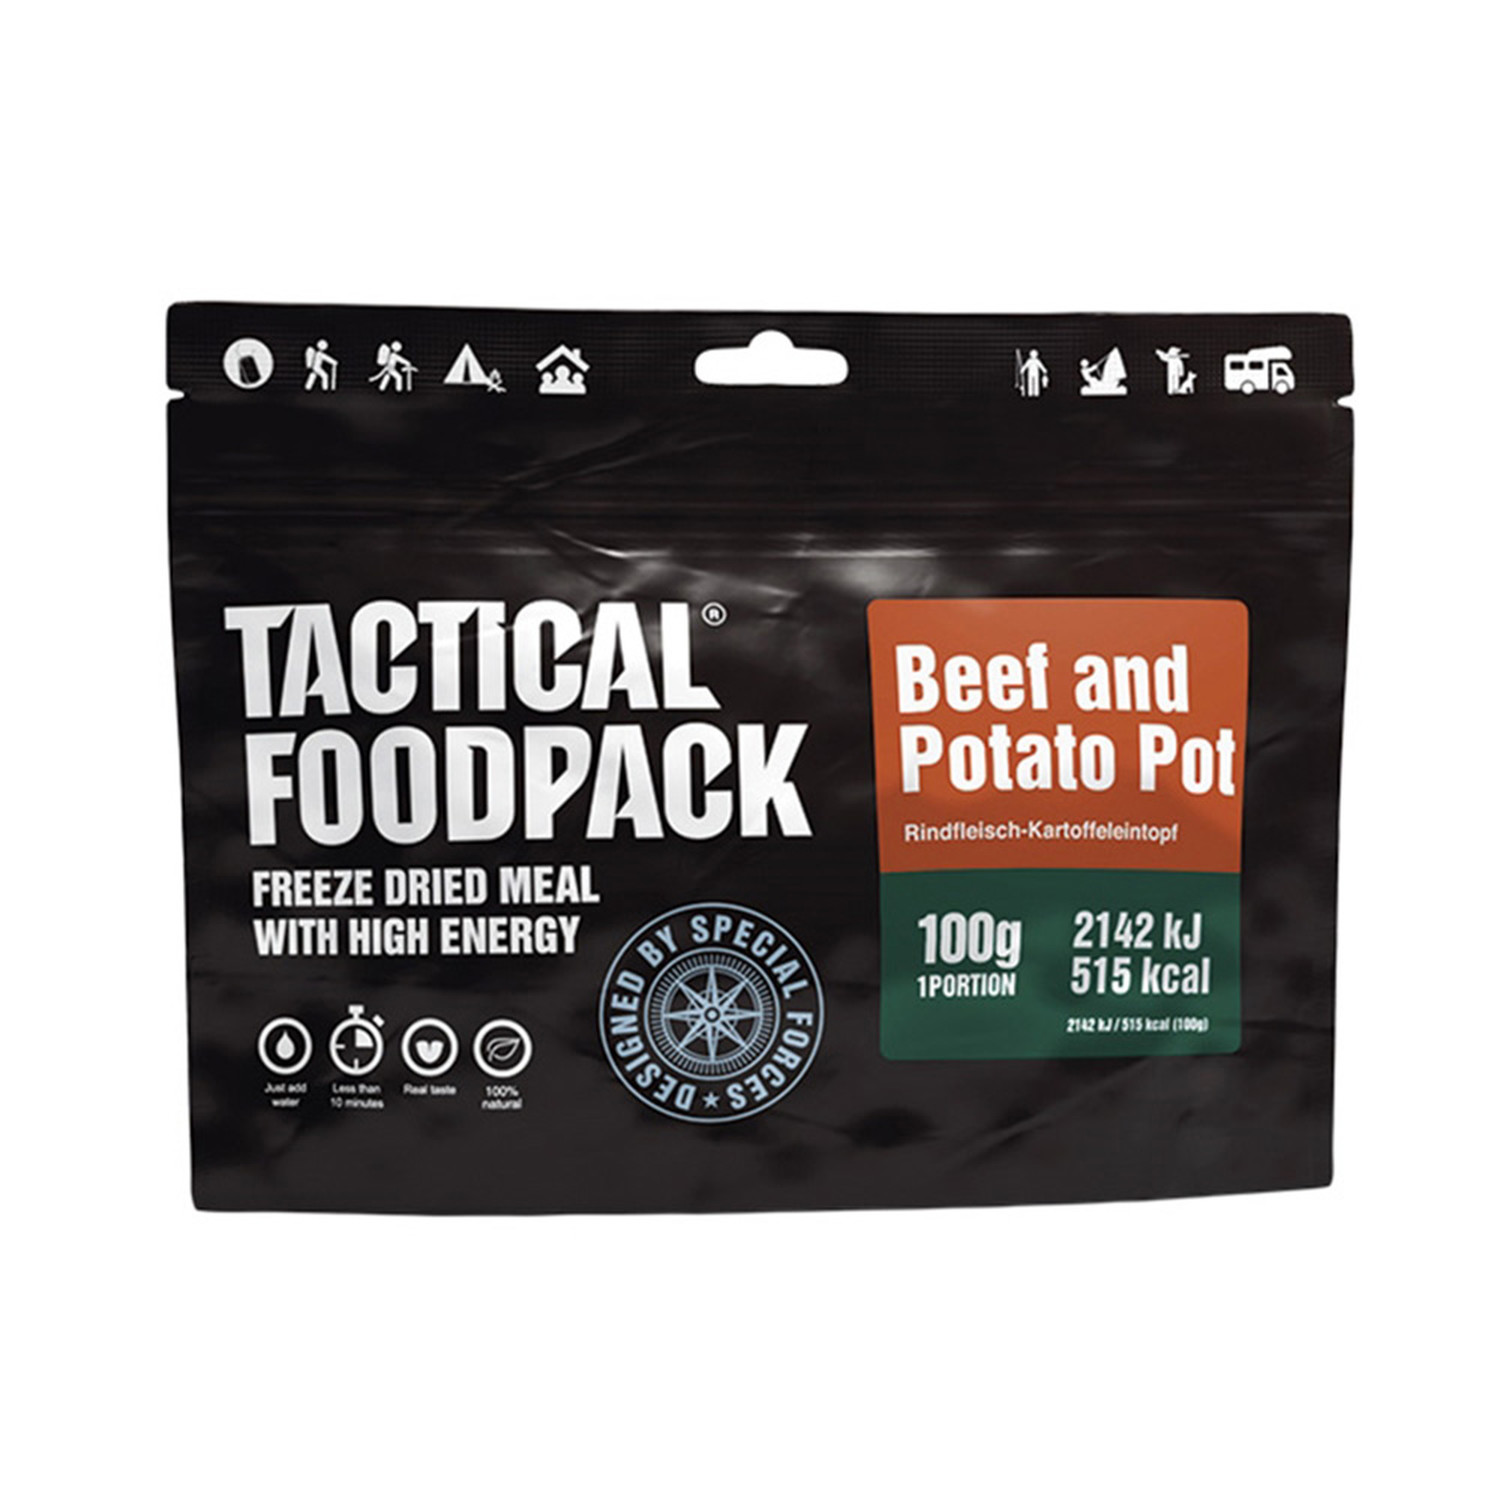 Tactical Foodpack® Beef and Potato Pot (Rindfleisch-Kartoffeleintopf) gefriergetrocknete Outdoor-Mahlzeit